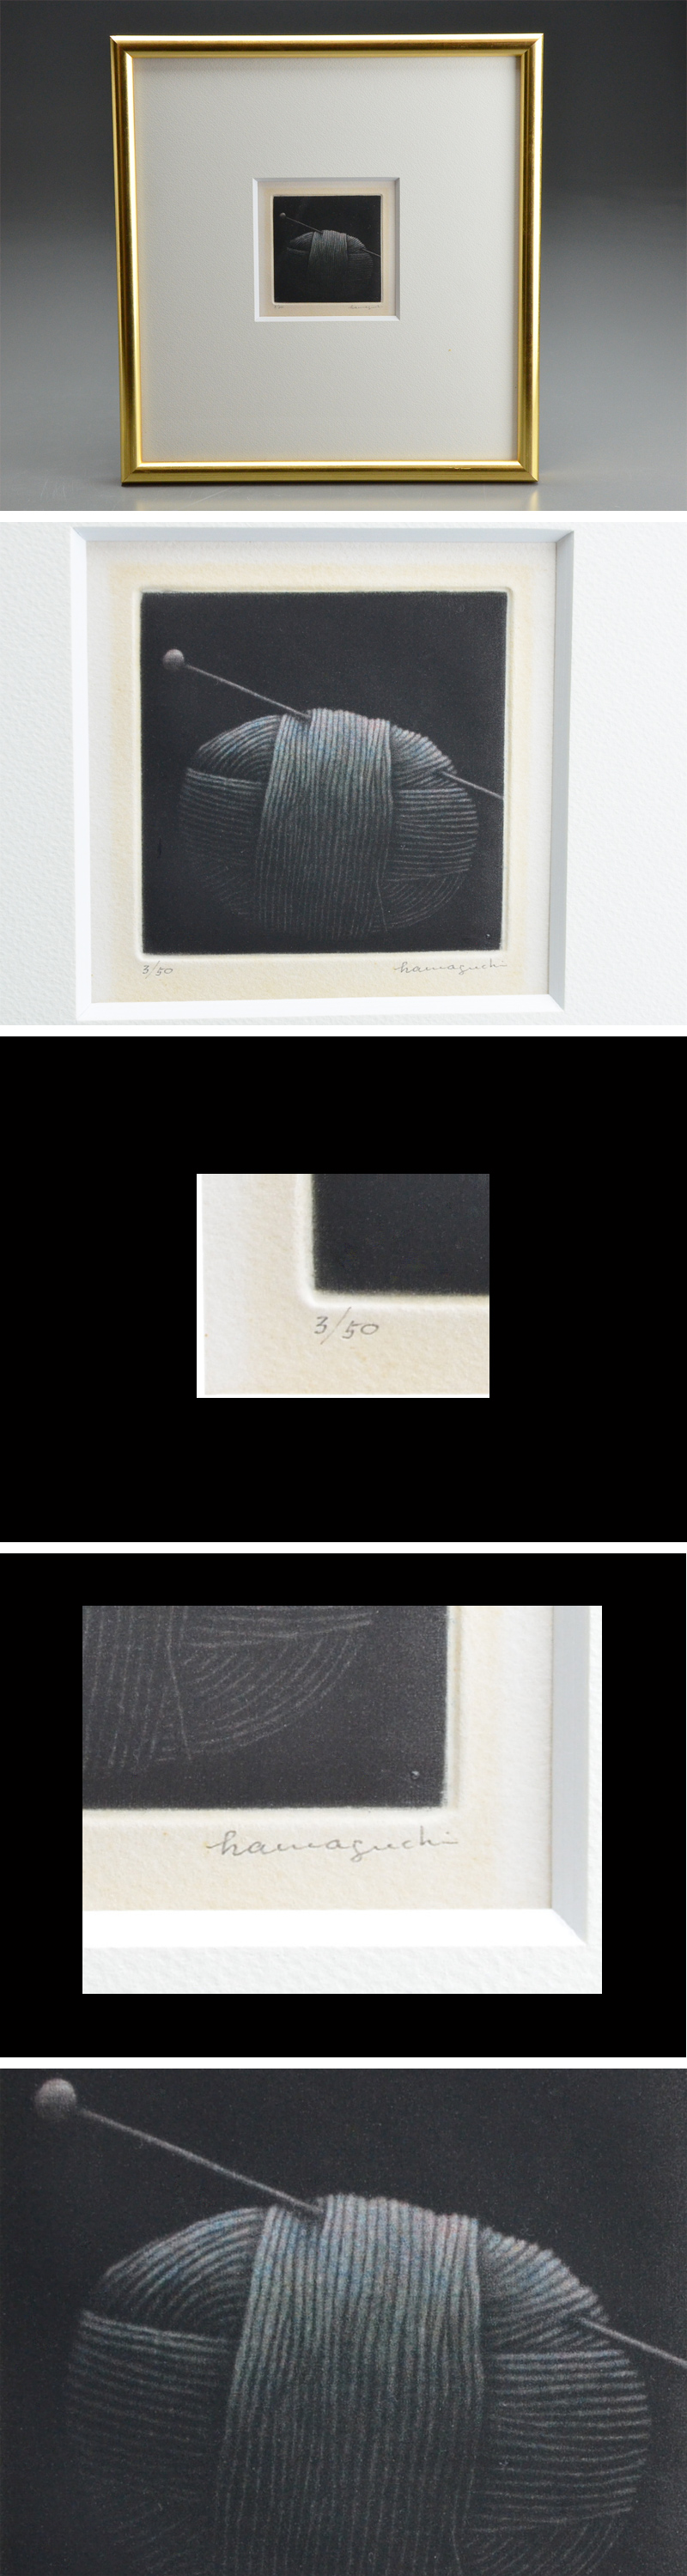 国内最安値浜口陽三 「 毛糸 」銅版画 ED 3/50 サイン有 額装 本物保証 06i848 銅版画、エッチング